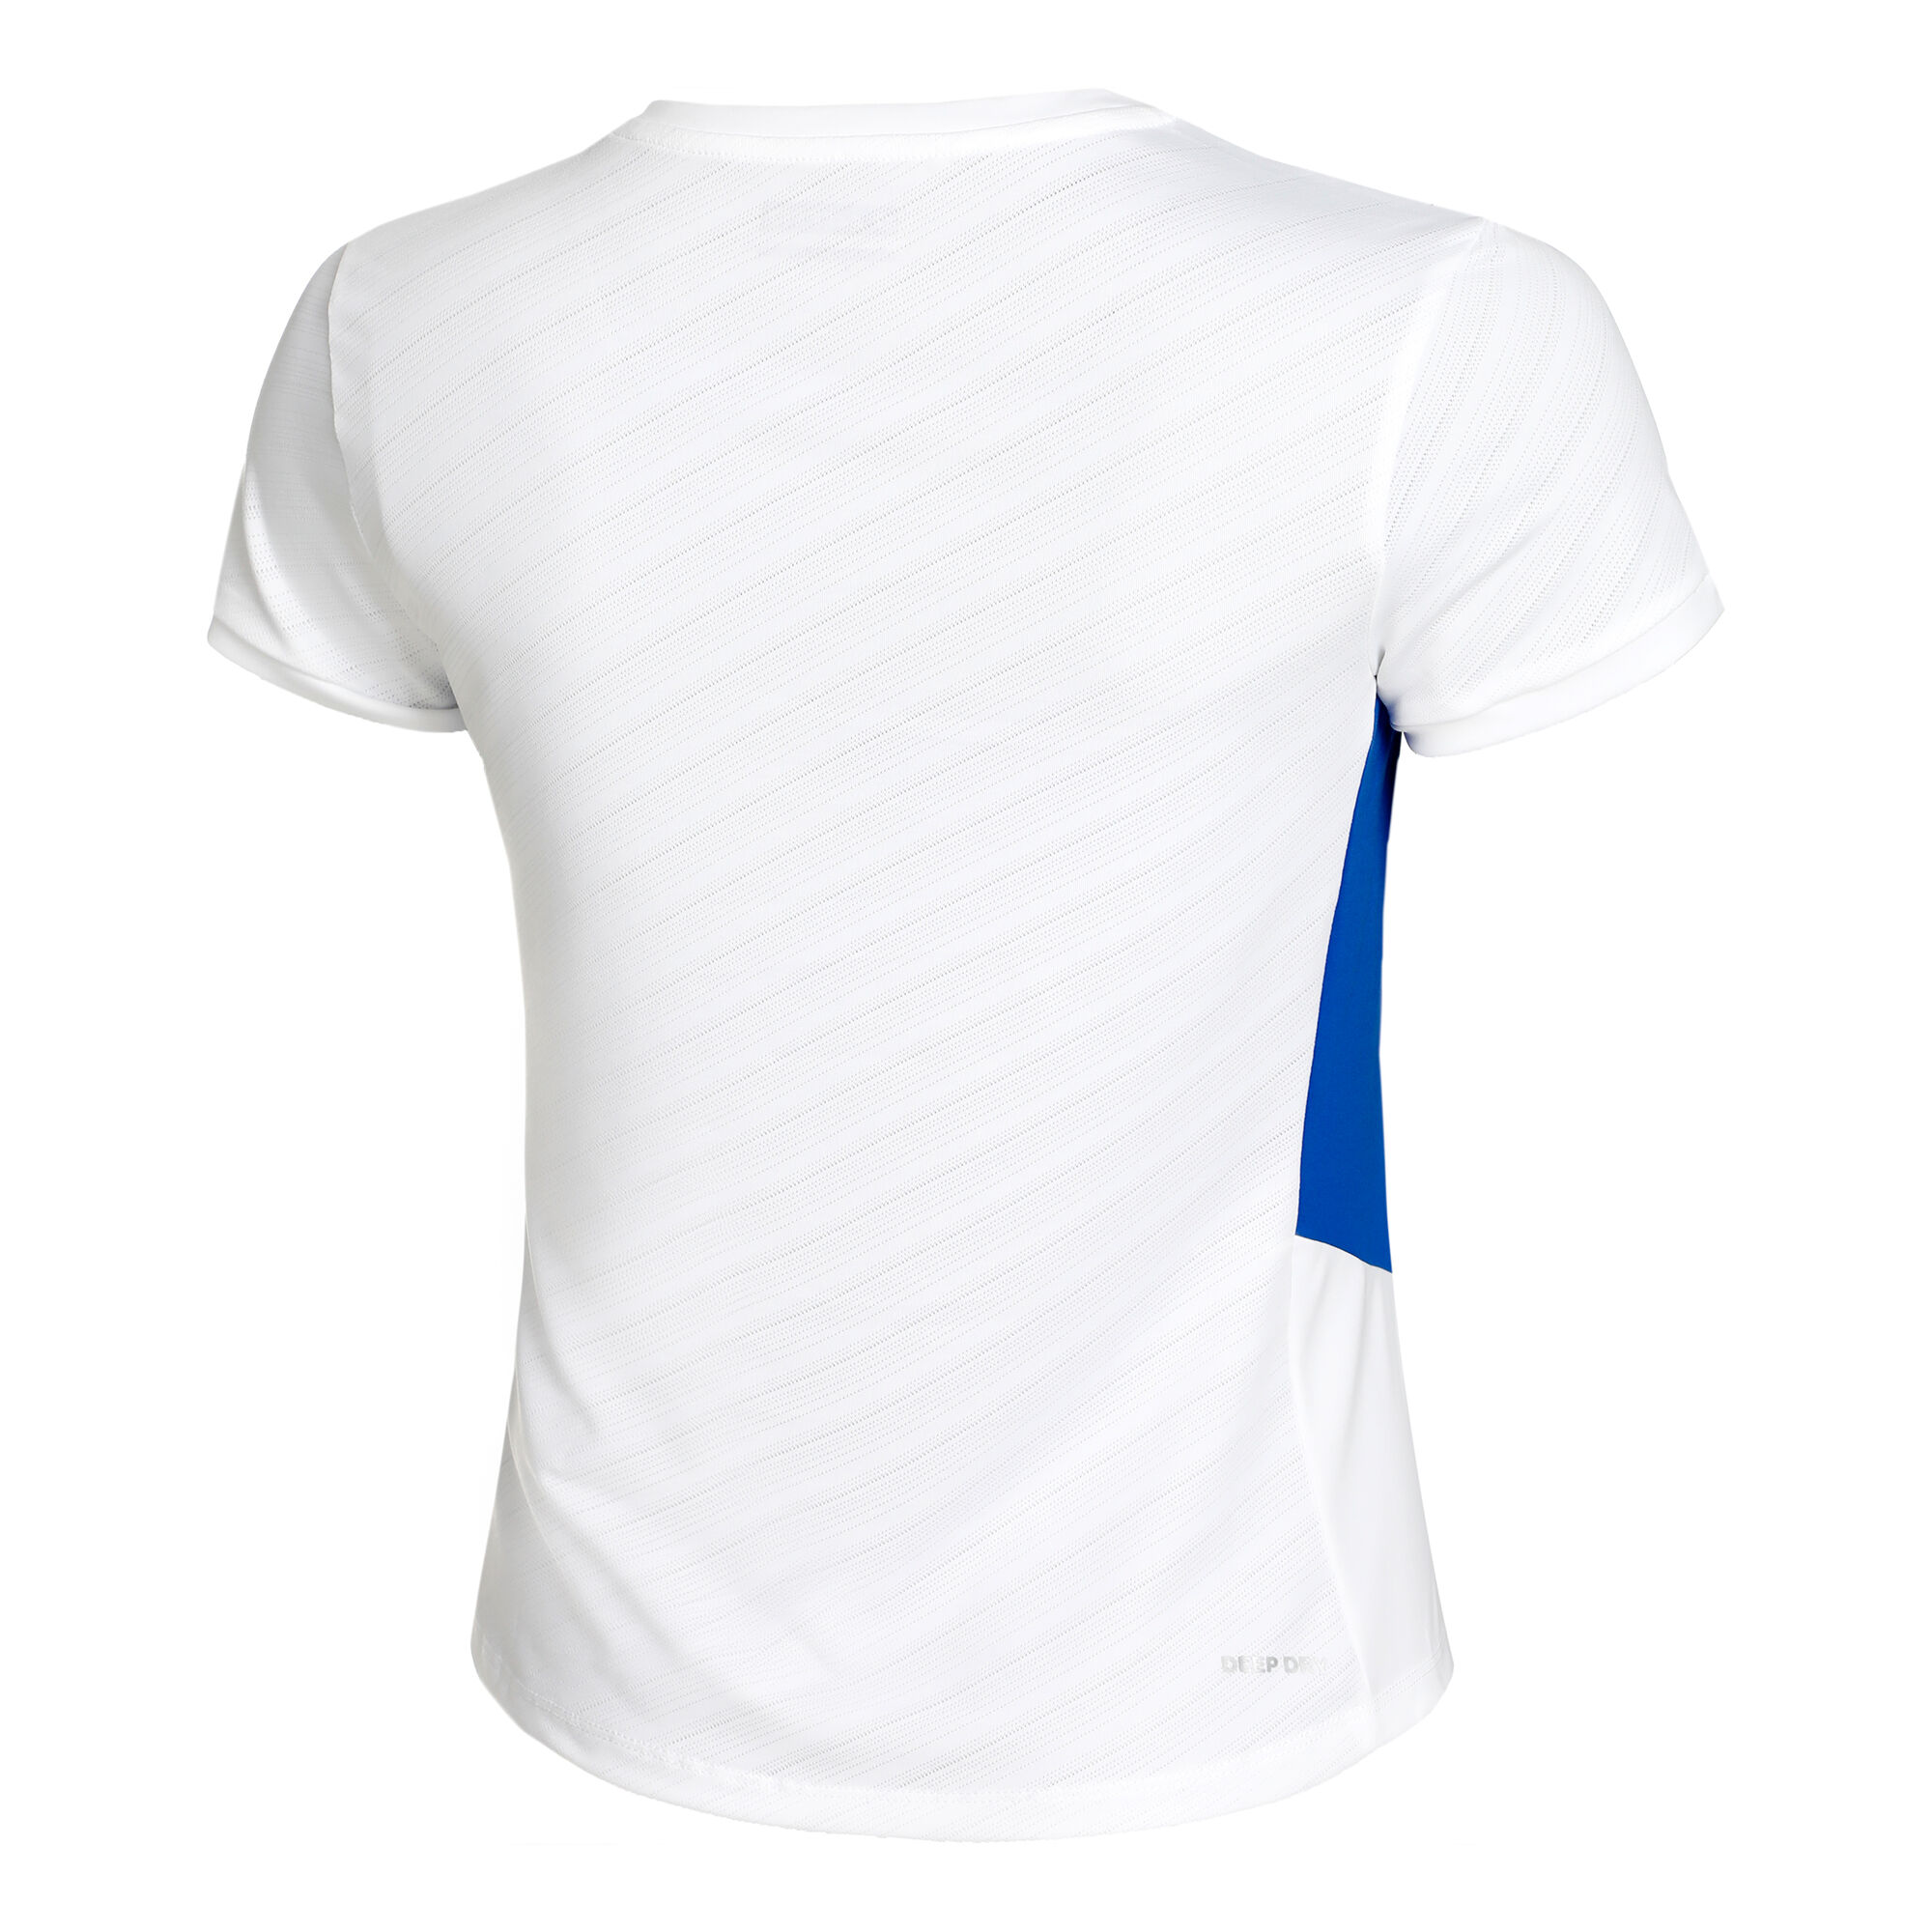 Lotto Tech 1 D2 T-Shirt Damen Weiß, Blau online kaufen | Tennis Point DE